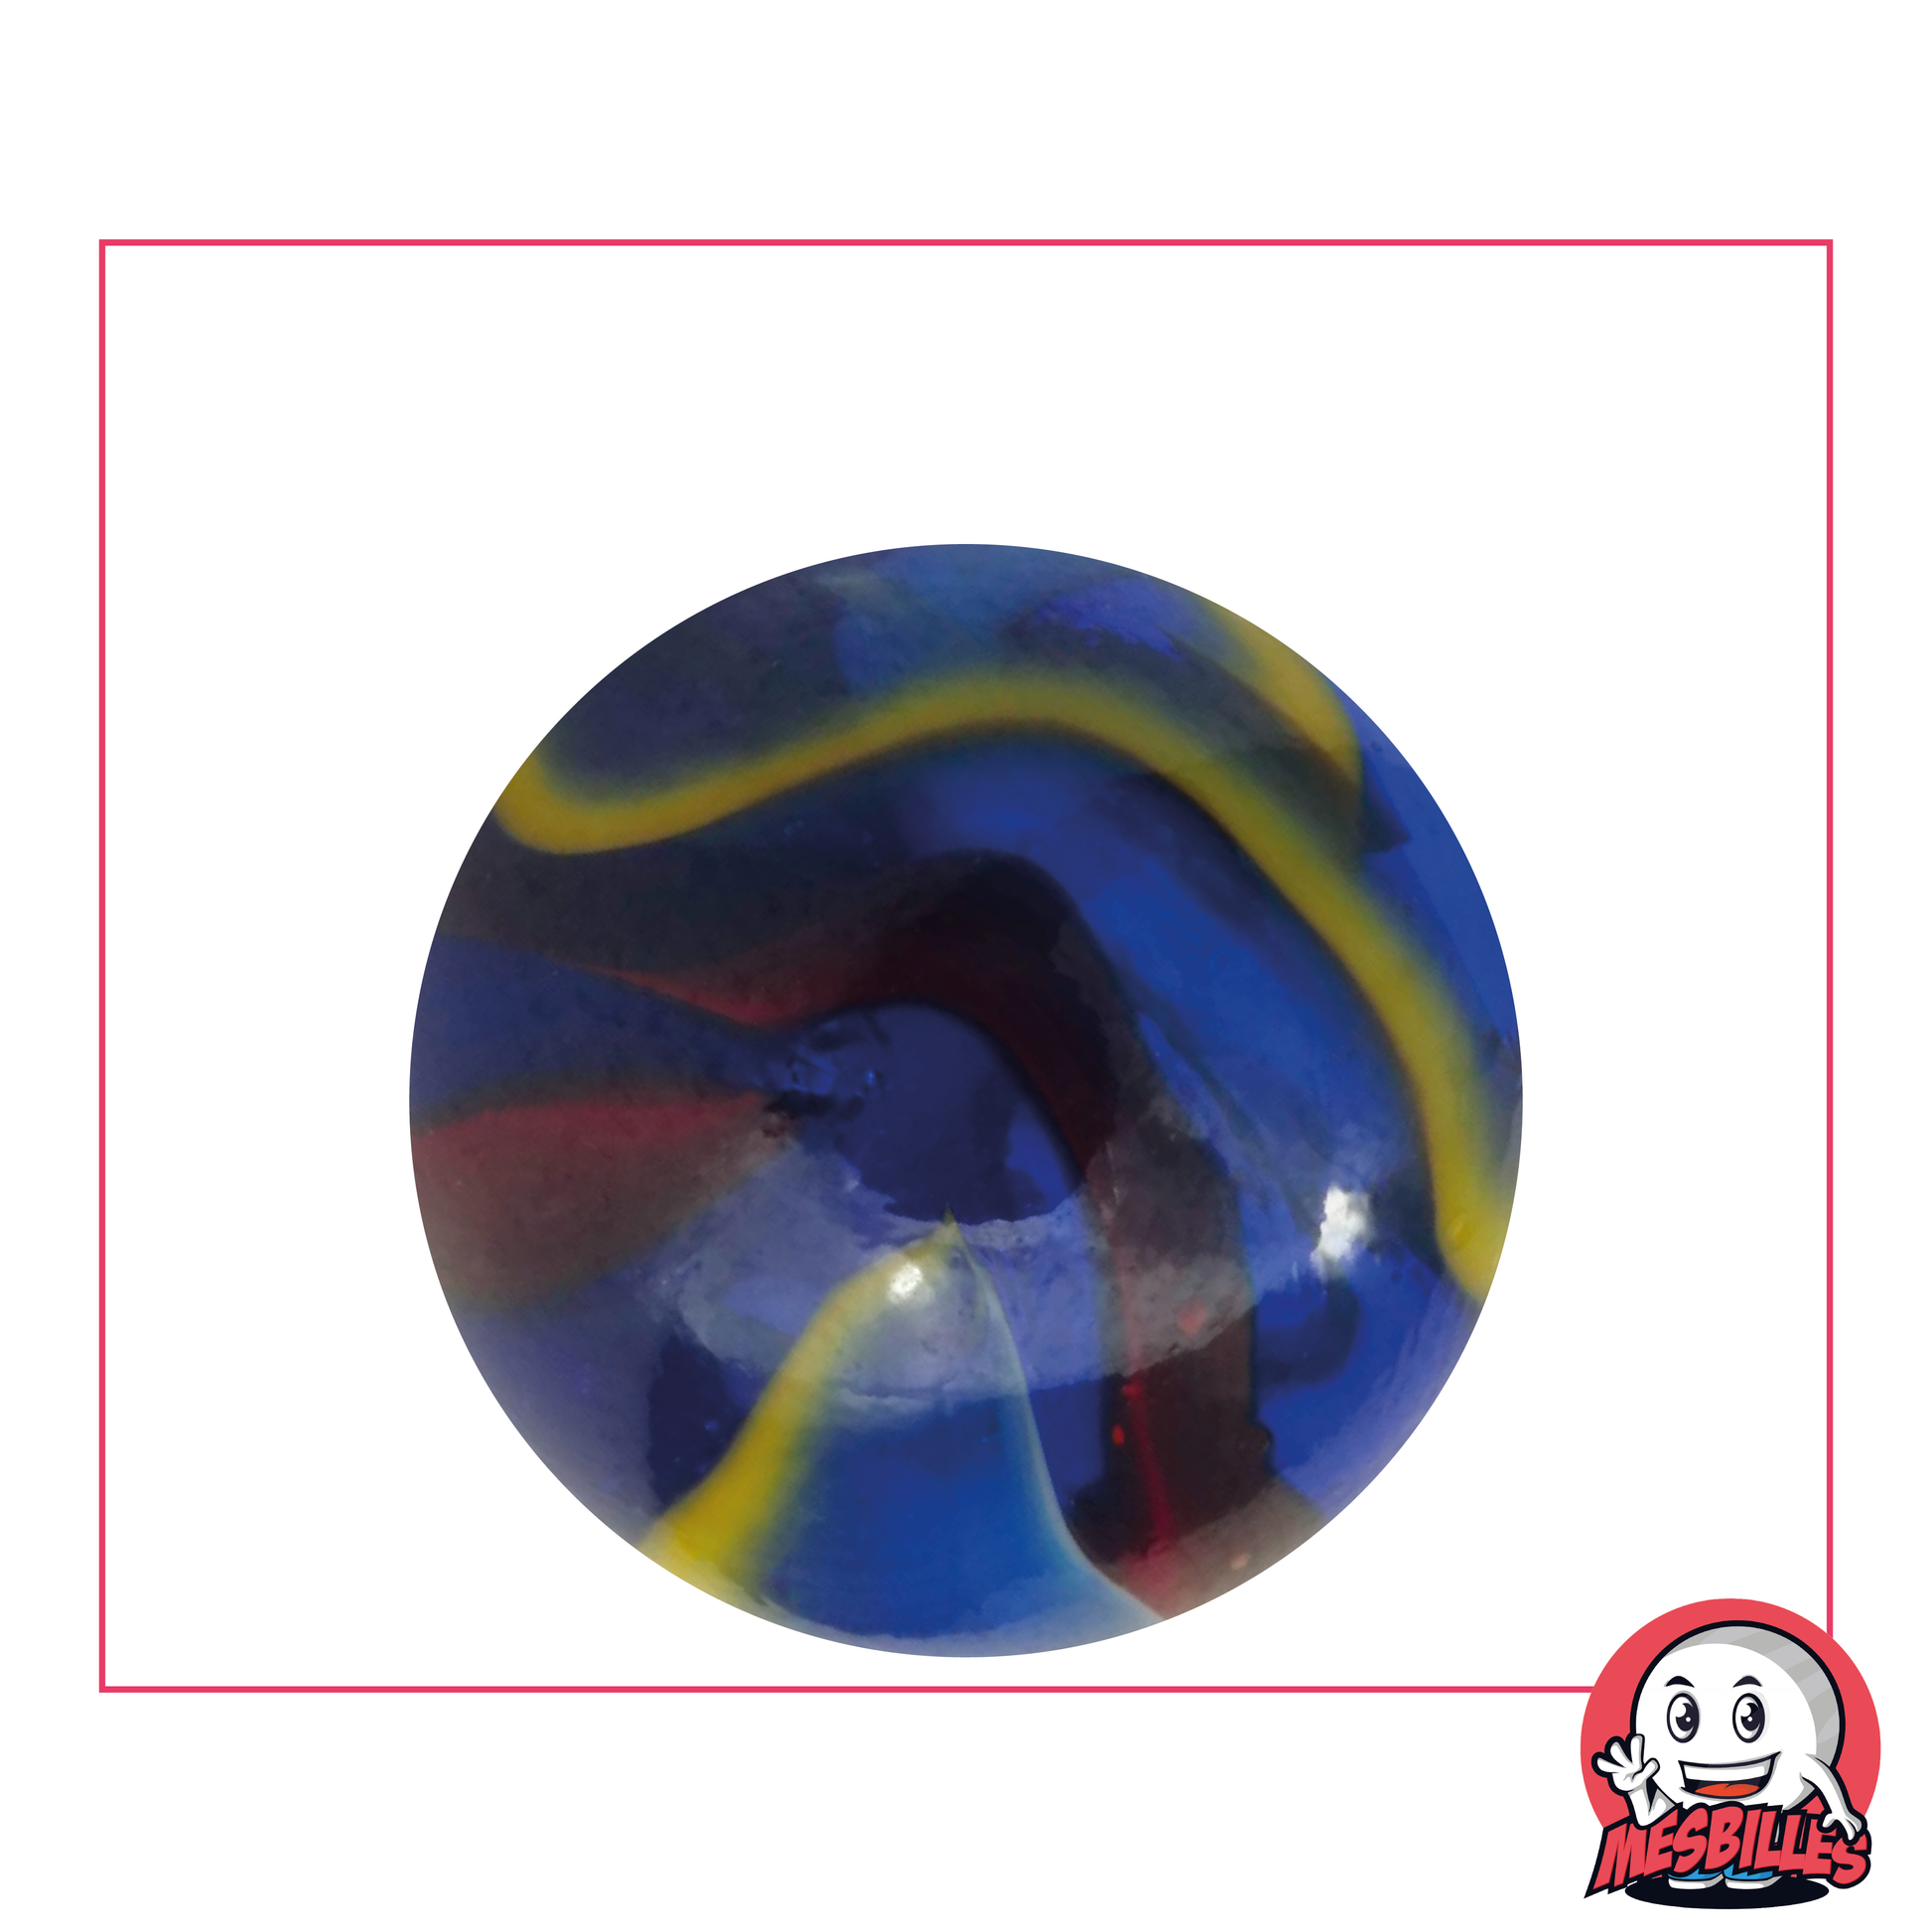 Bille Michel-Ange 35 mm en verre bleu, avec striures rouges, blanches et jaunes - MesBilles